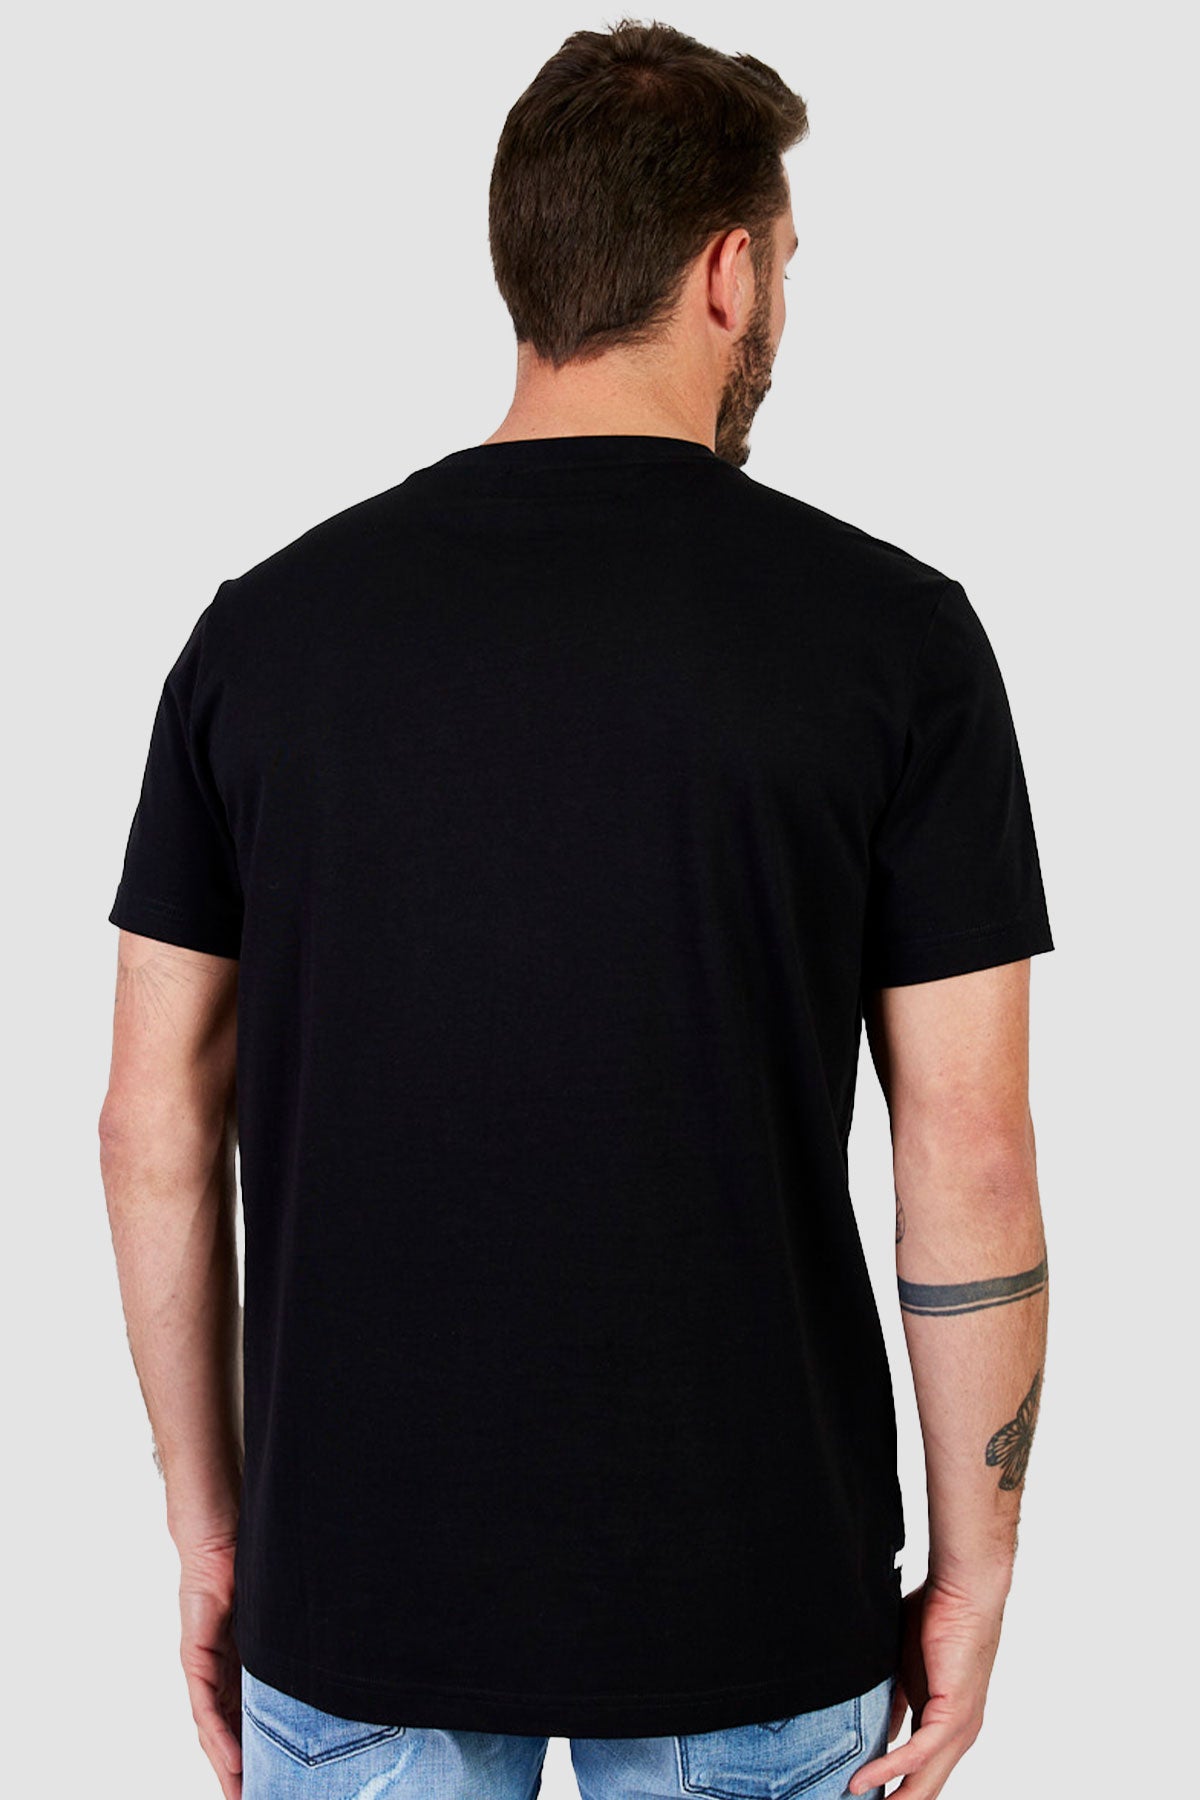 ריפליי חולצת טי שירט כותנה Danny בצבע שחור לגברים-Replay-XS-נאקו